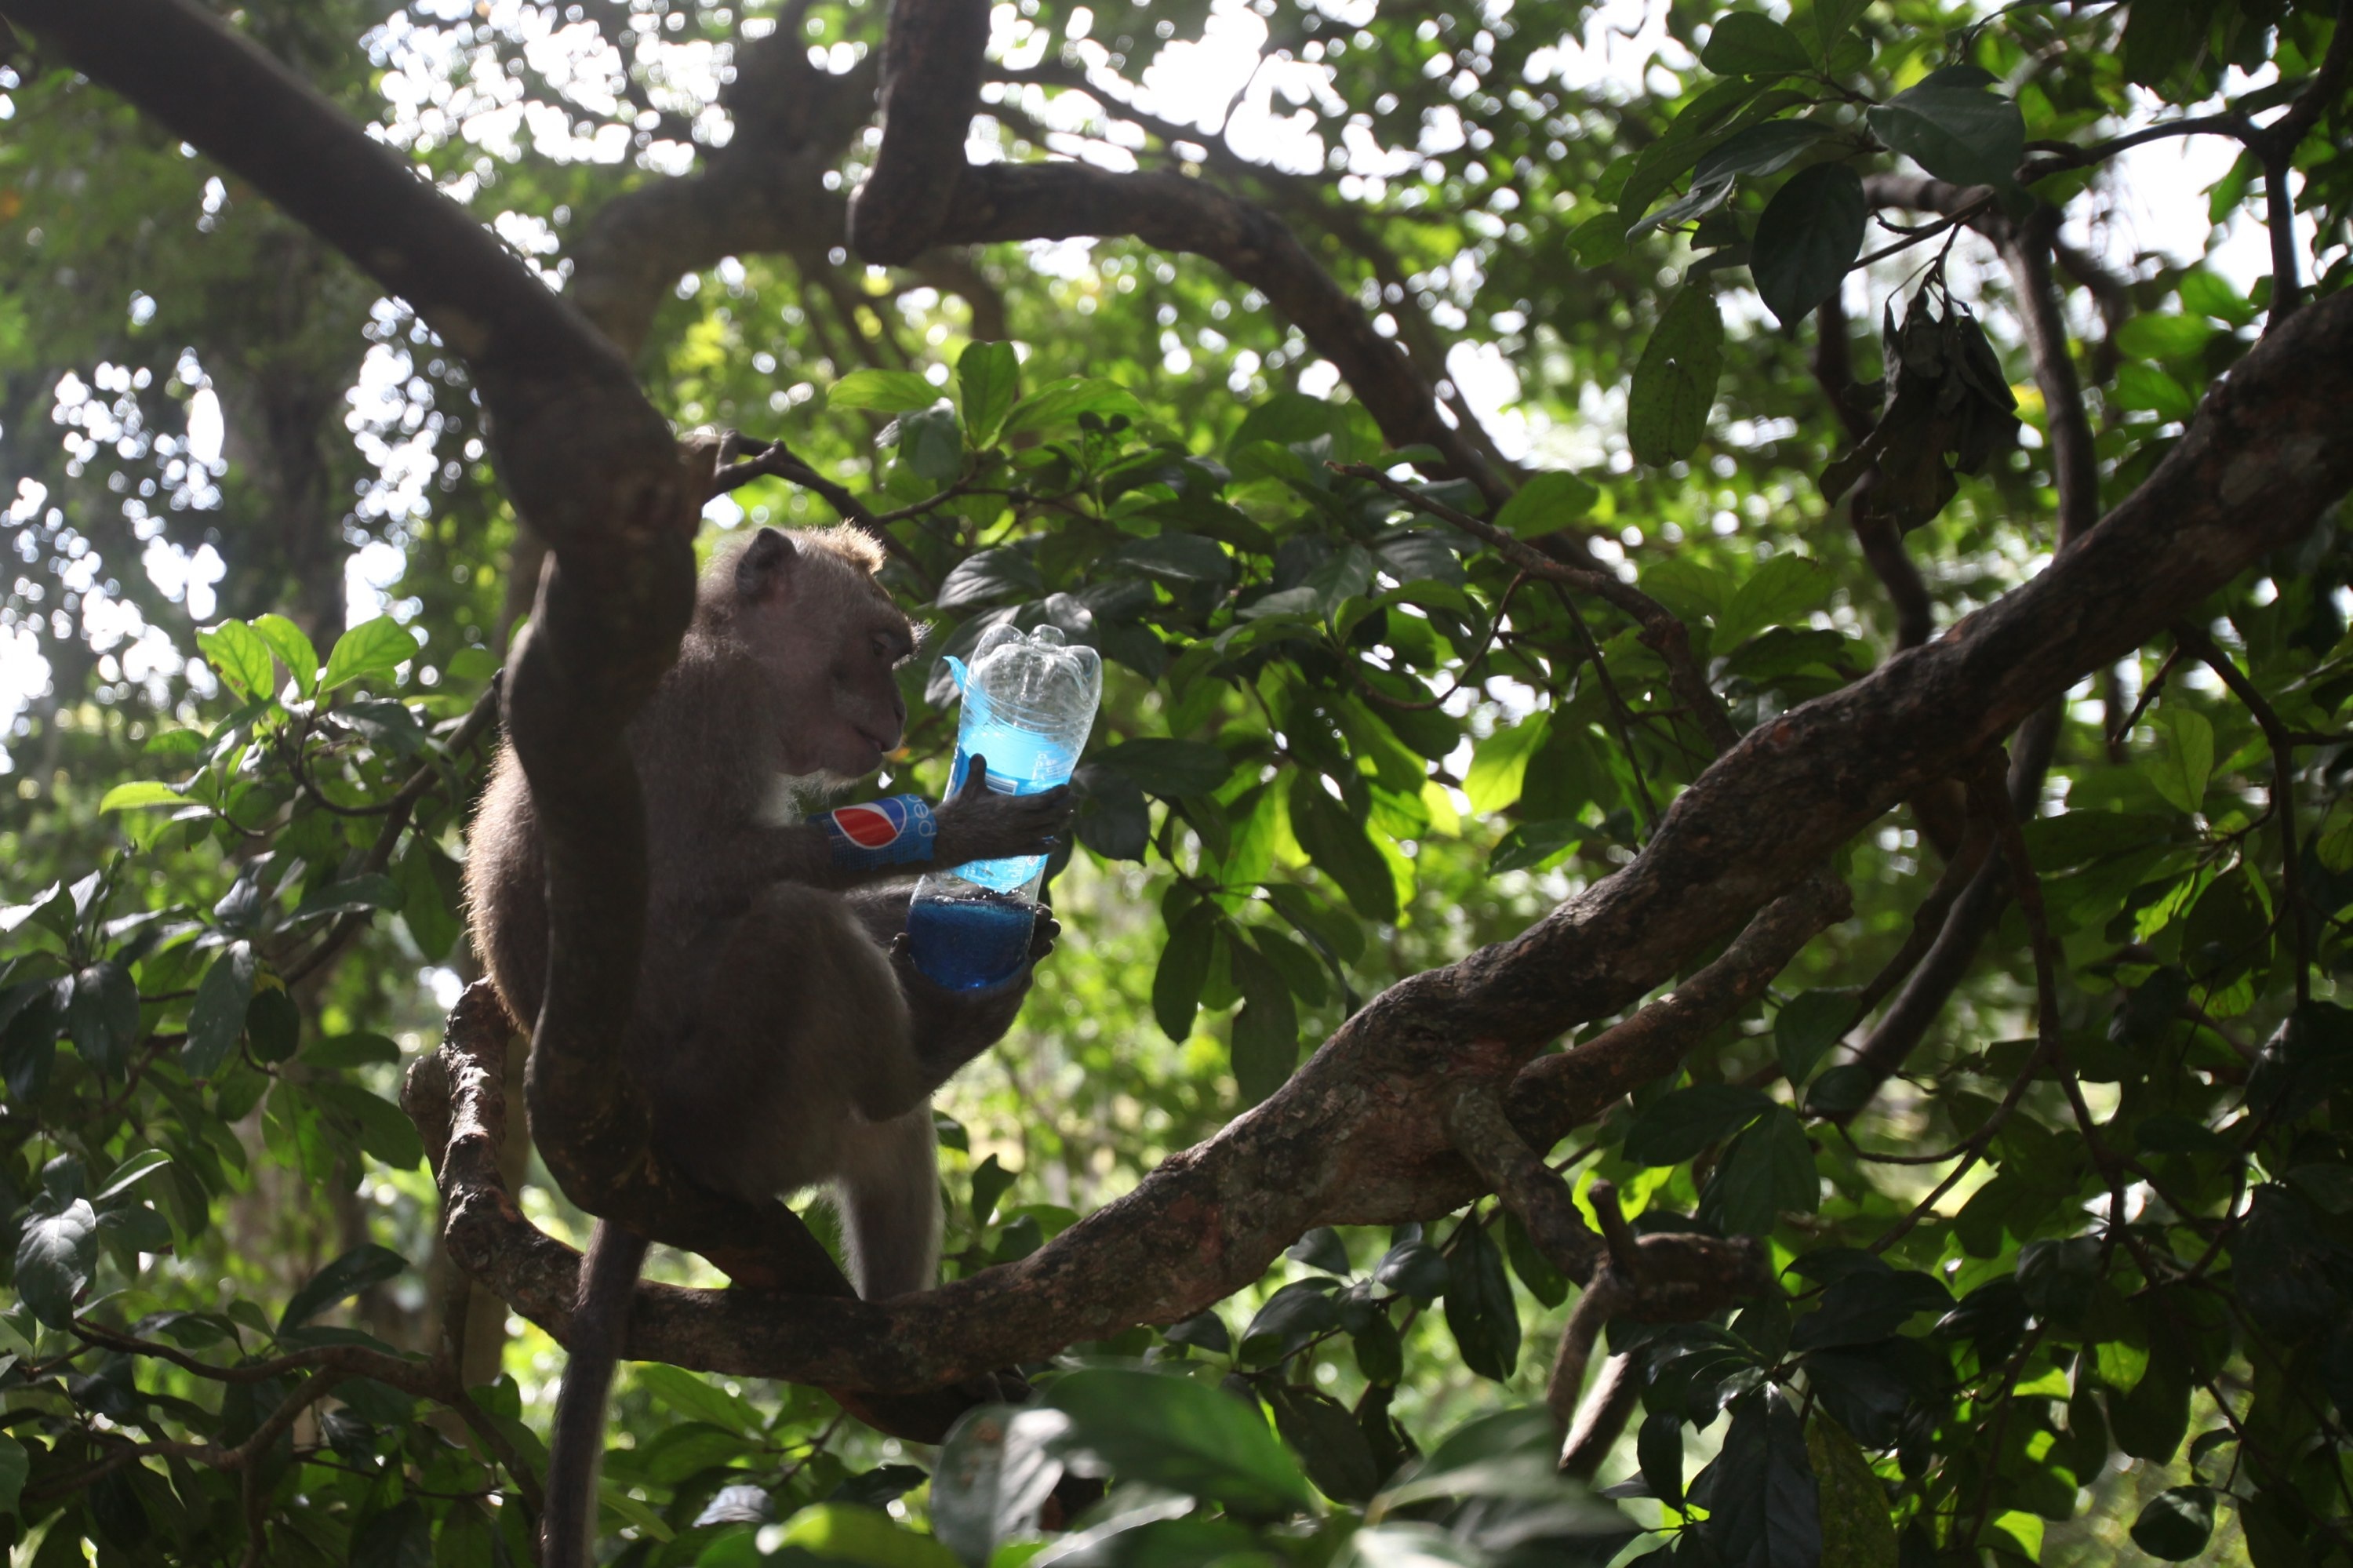 Фото древних статуй в городе обезьян где нет обезьян джунглей. Video r34 Monkey in Jungle with Laptop.